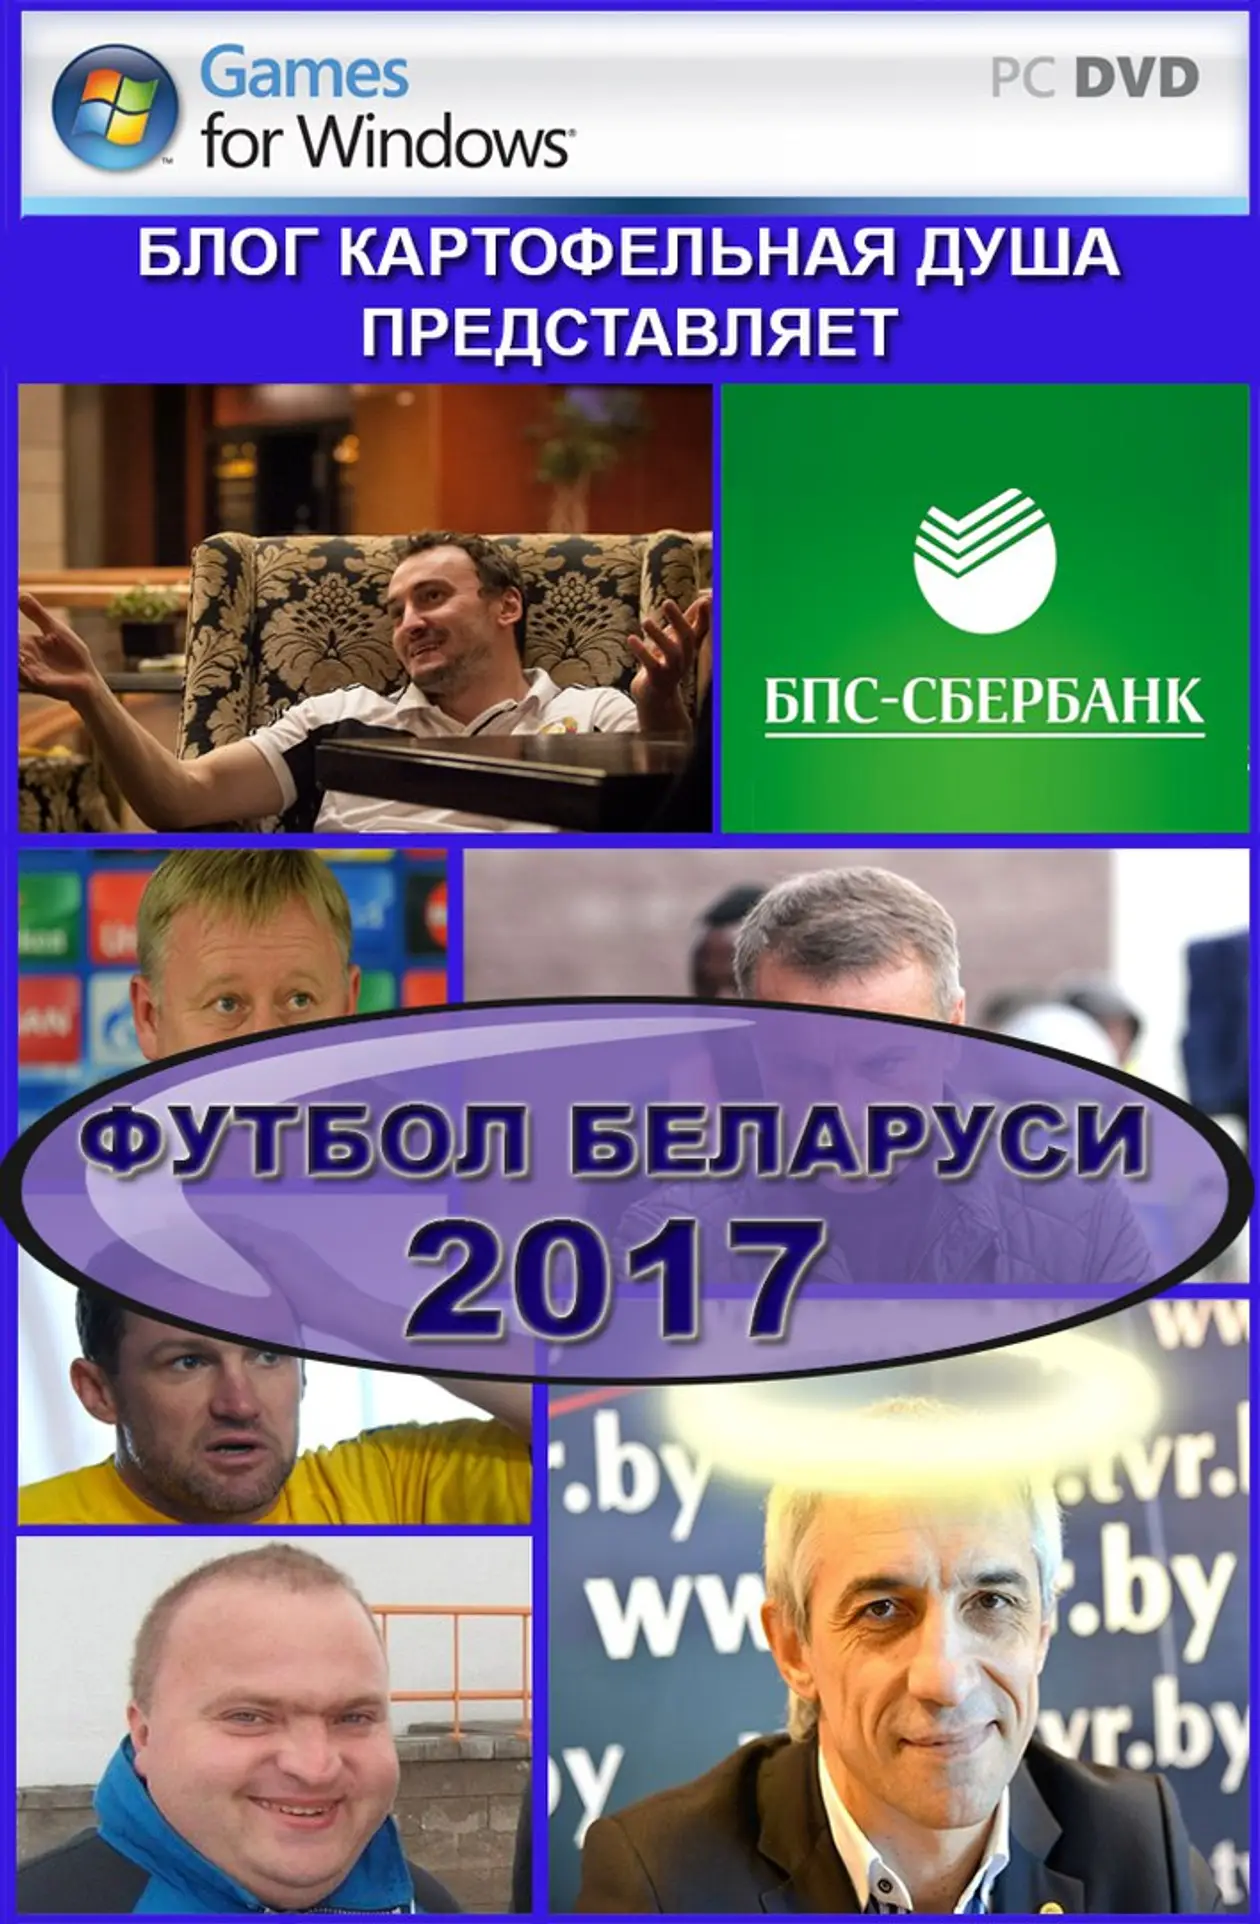 Симулятор «Футбол Беларуси 2017». Киберспорт по-нашему